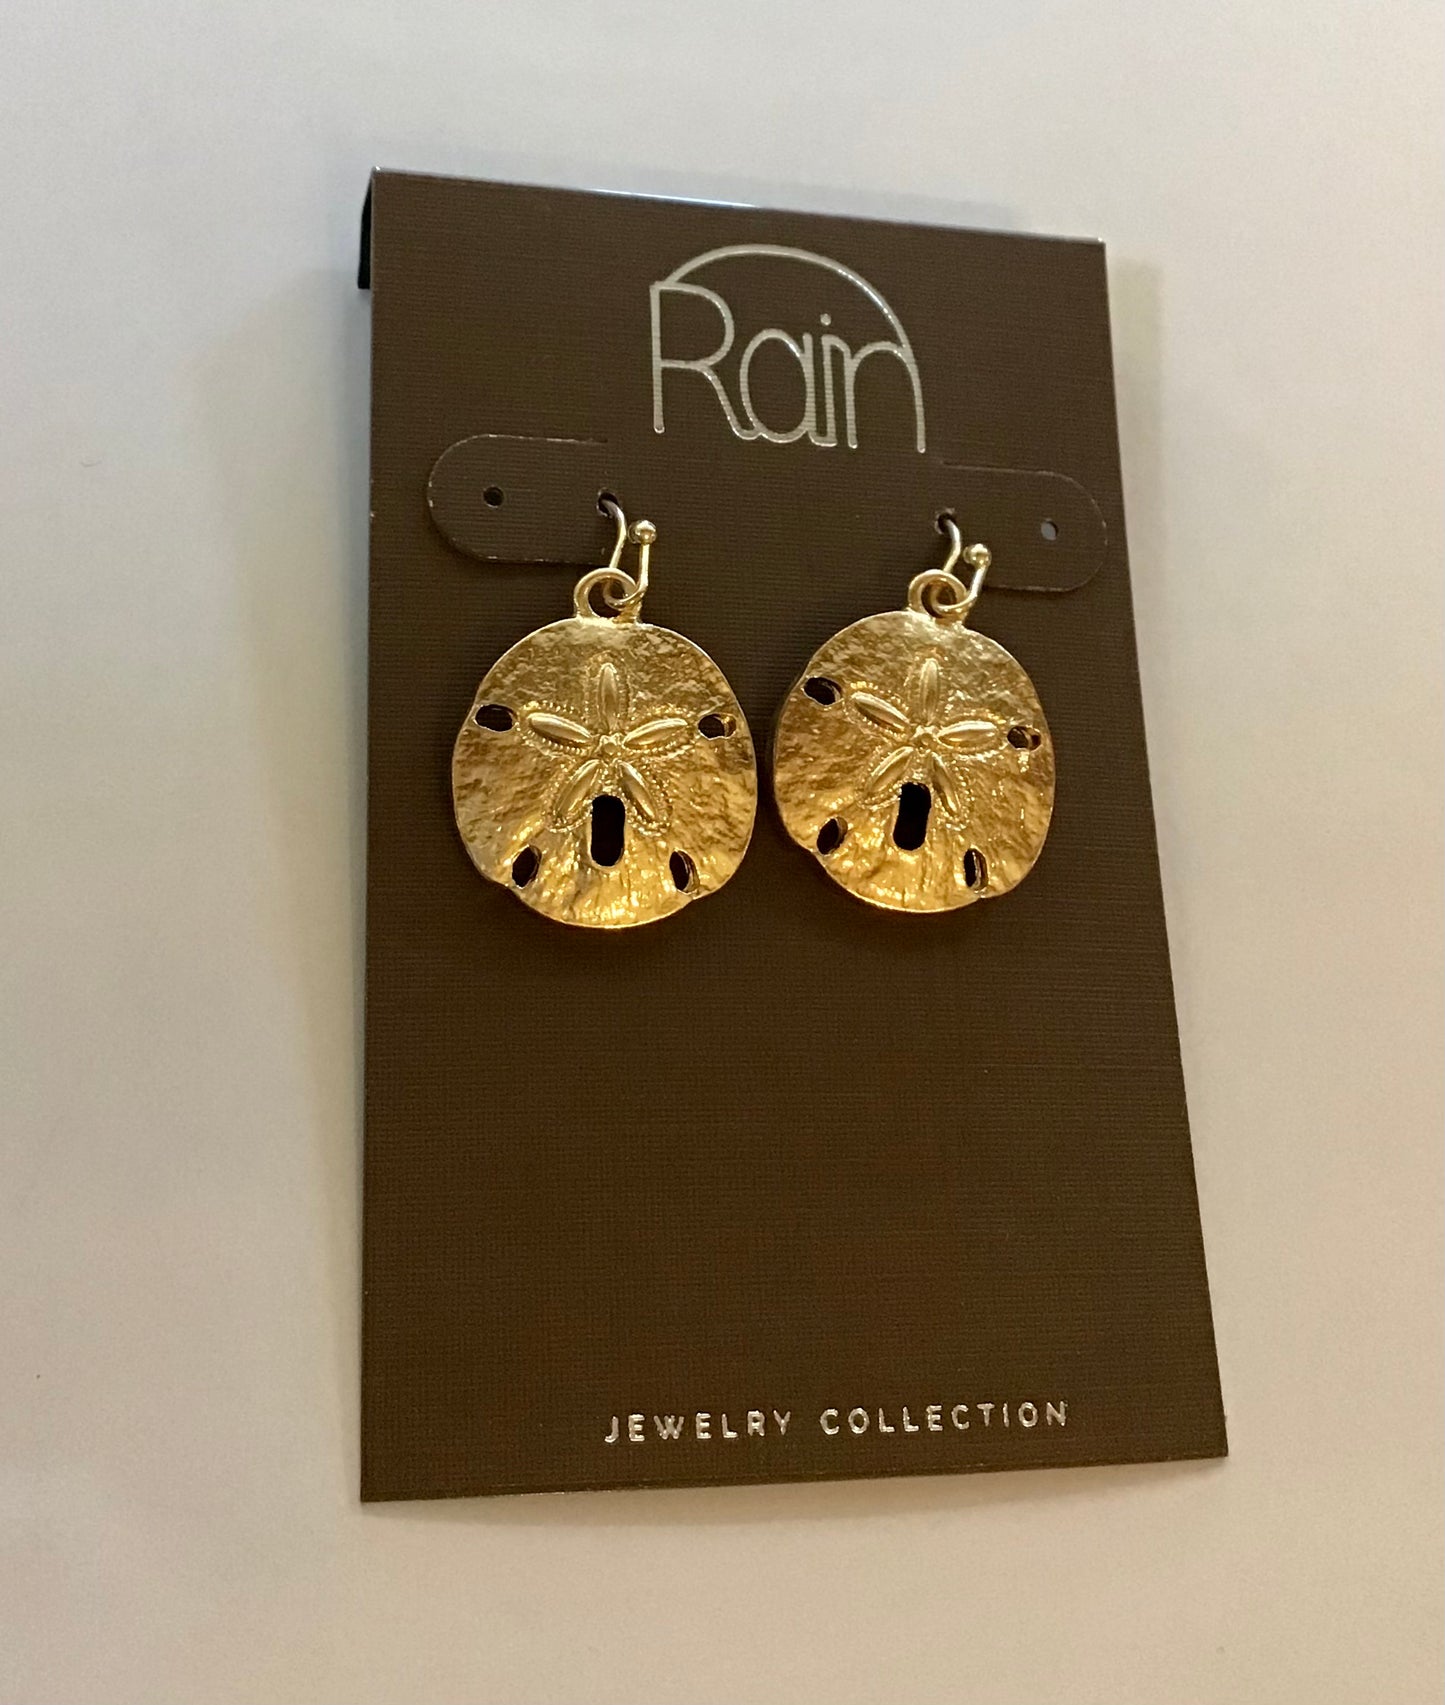 Rain Jewelry Collection Earrings PIERCED